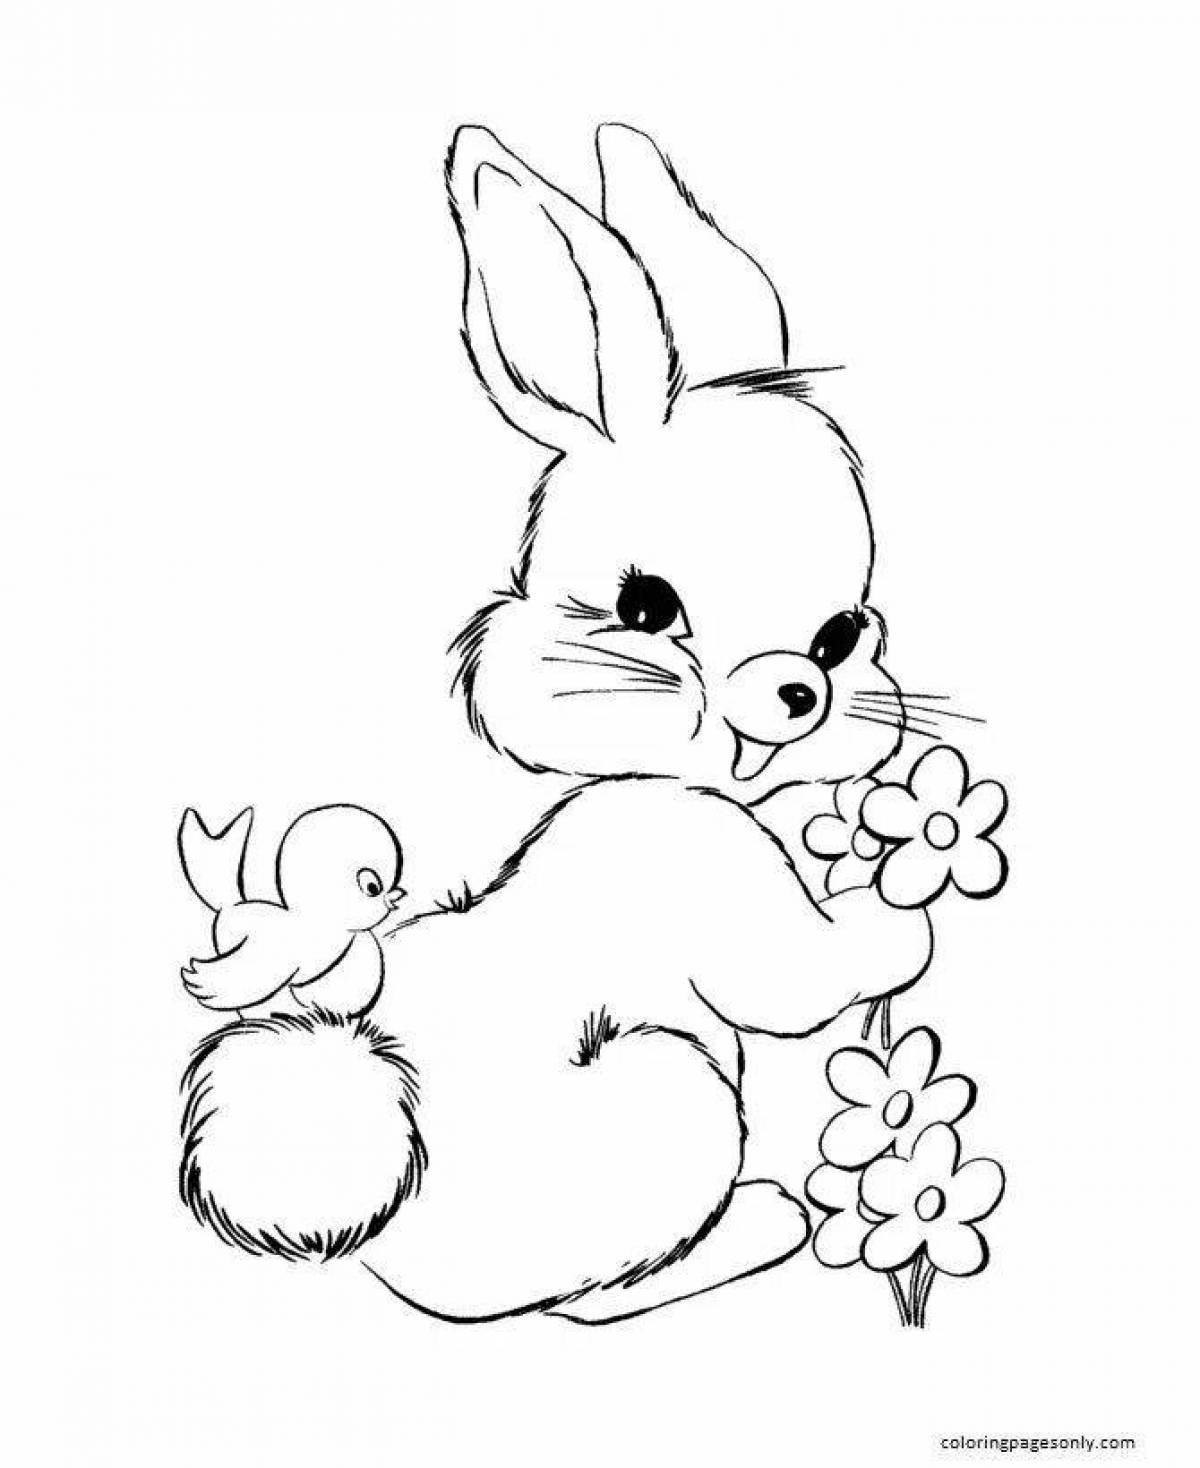 Причудливый рисунок кролика